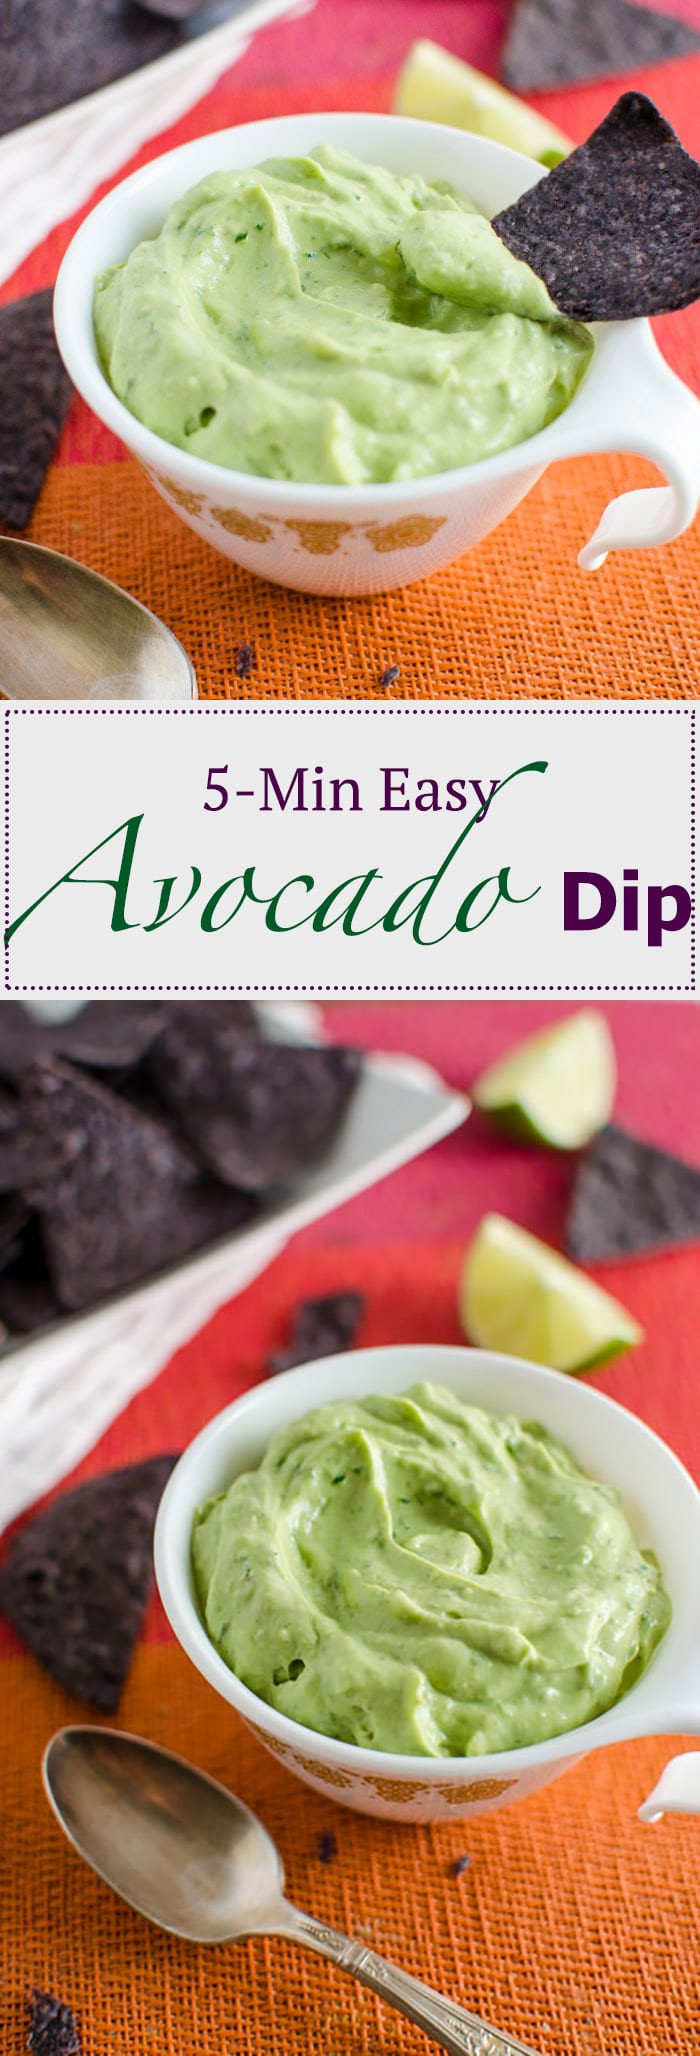 Avocado Recipes Dips
 5 Minute Easy Avocado Dip